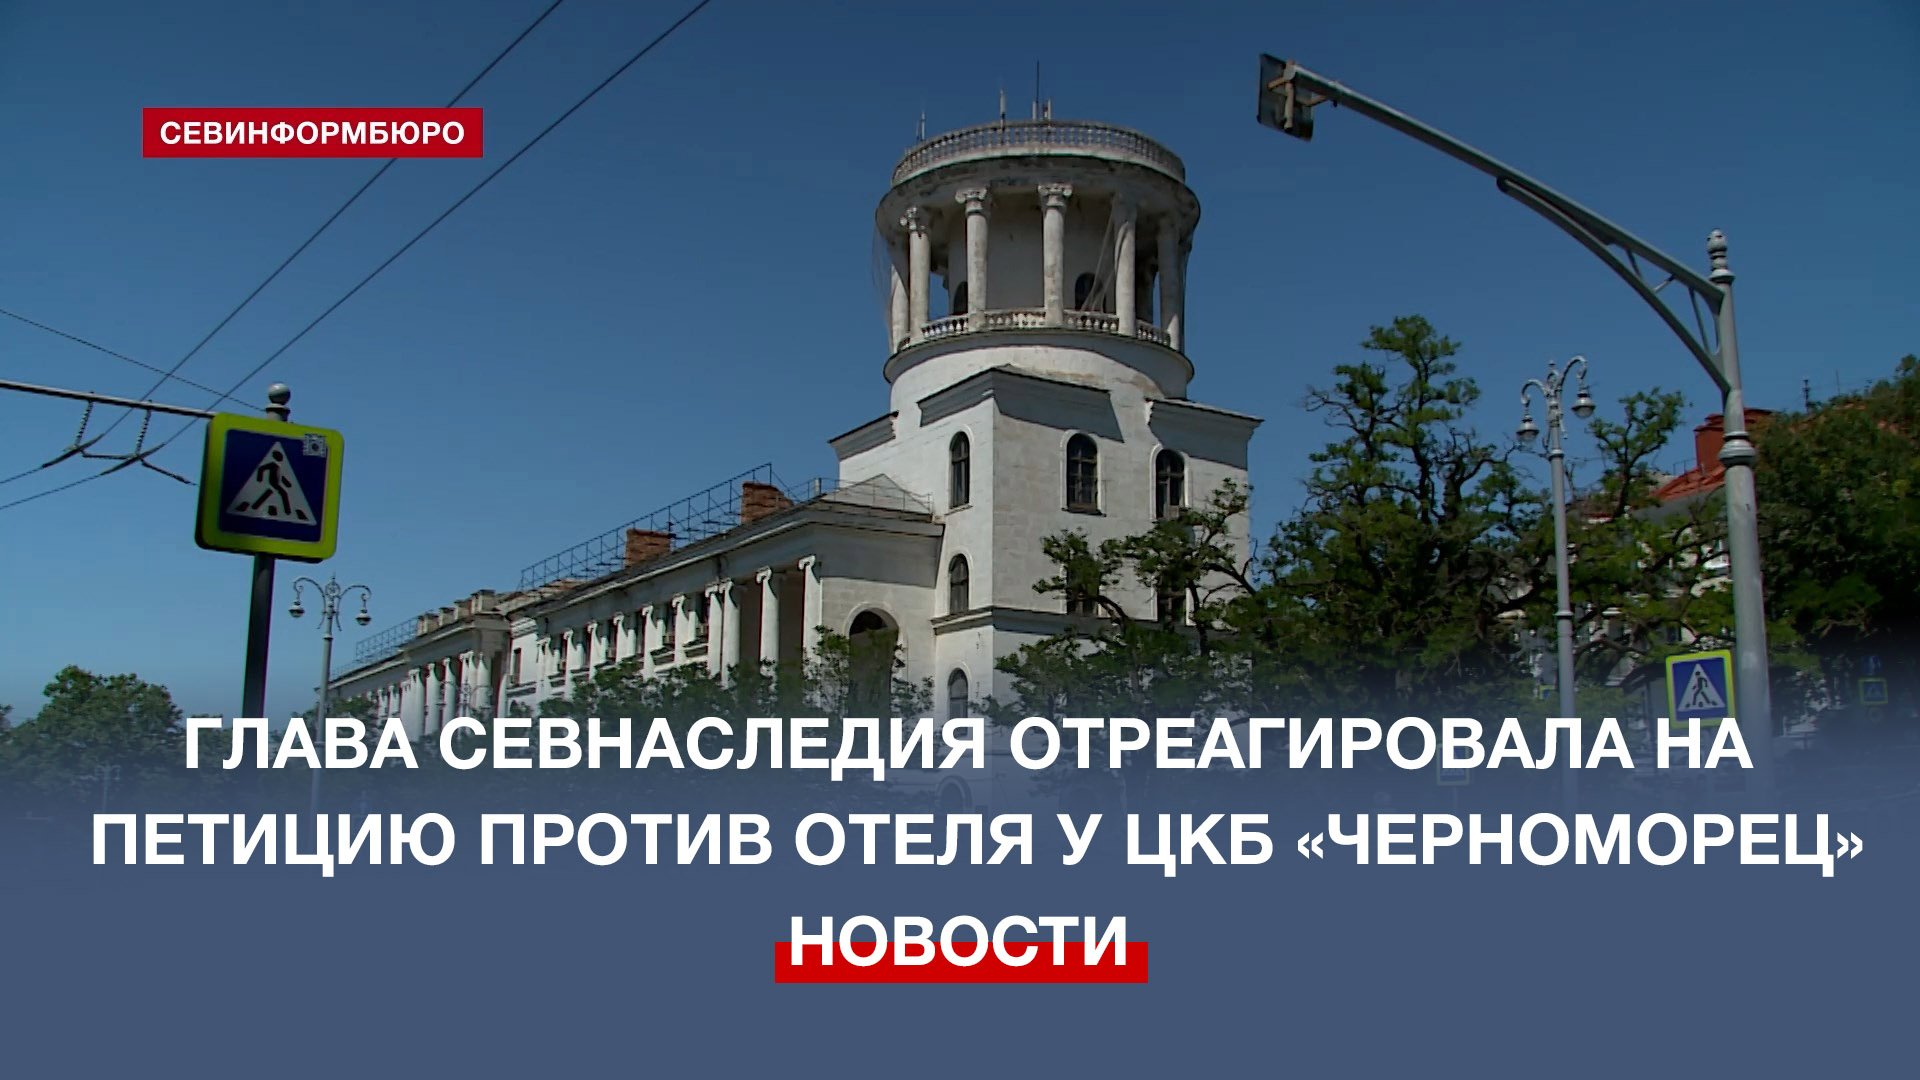 Глава Севнаследия отреагировала на петицию против отеля около ЦКБ «Черноморец»